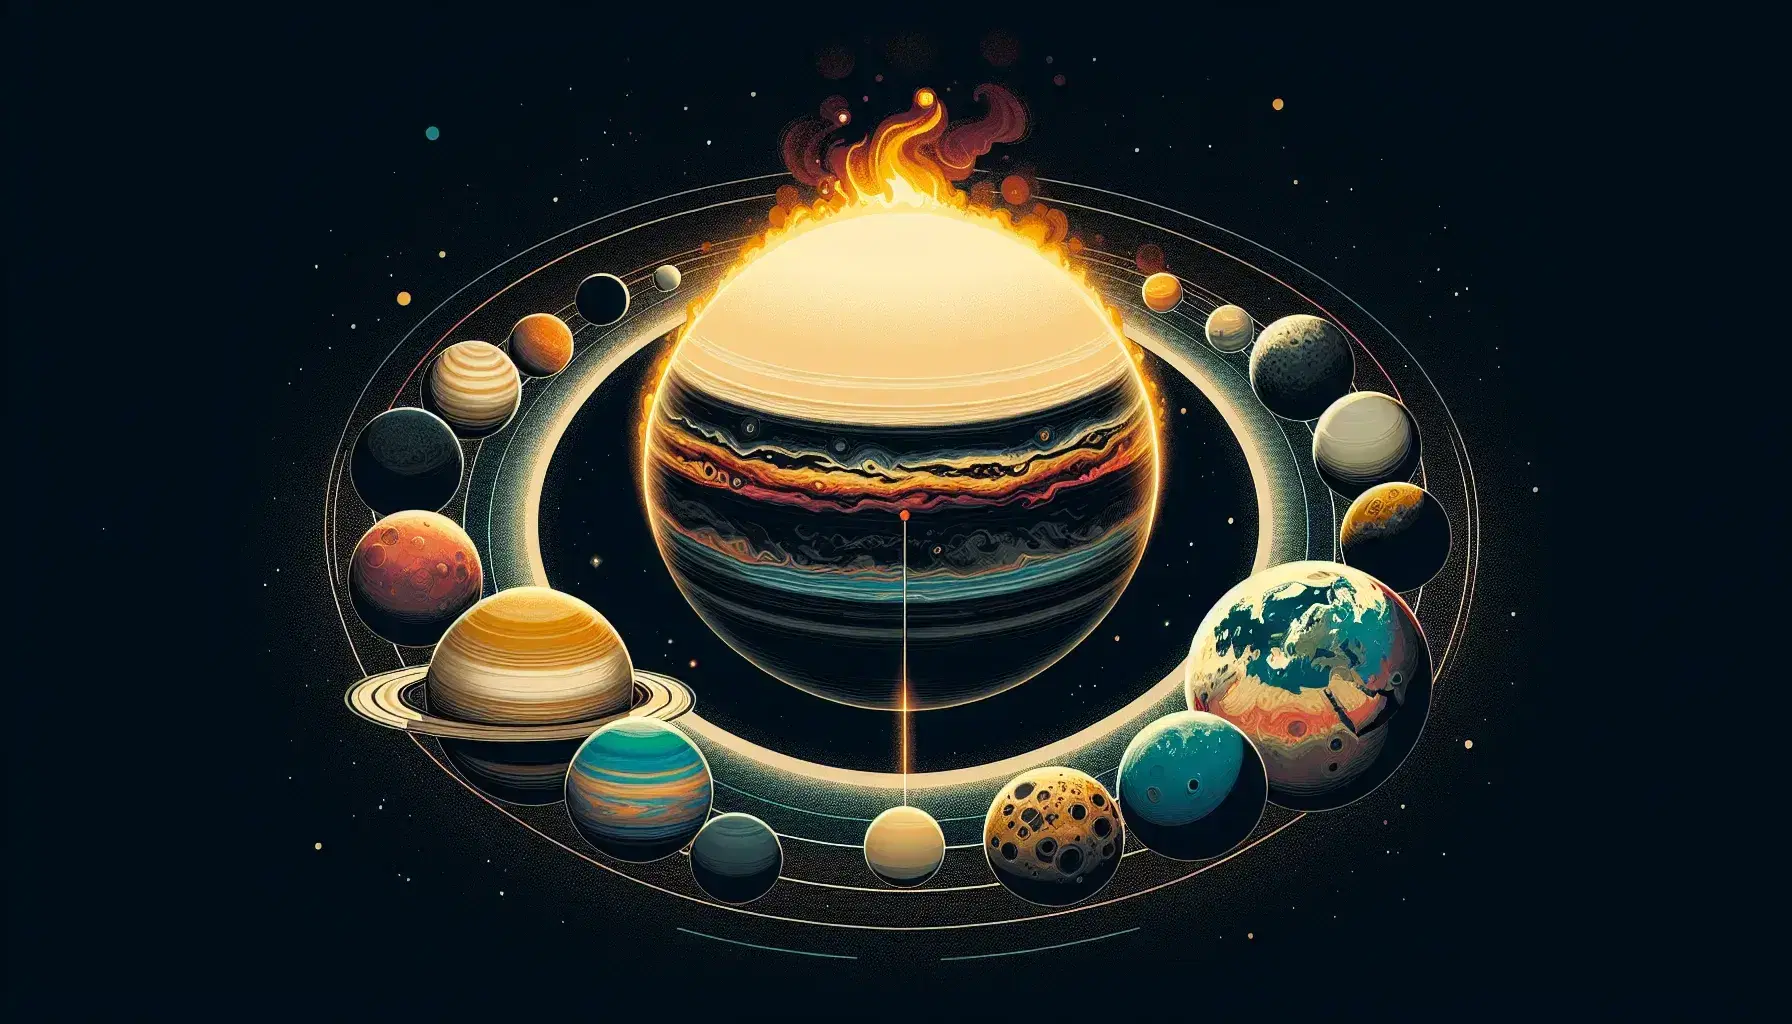 Rappresentazione artistica del sistema solare con il Sole al centro e otto pianeti colorati in orbita su sfondo spaziale nero.